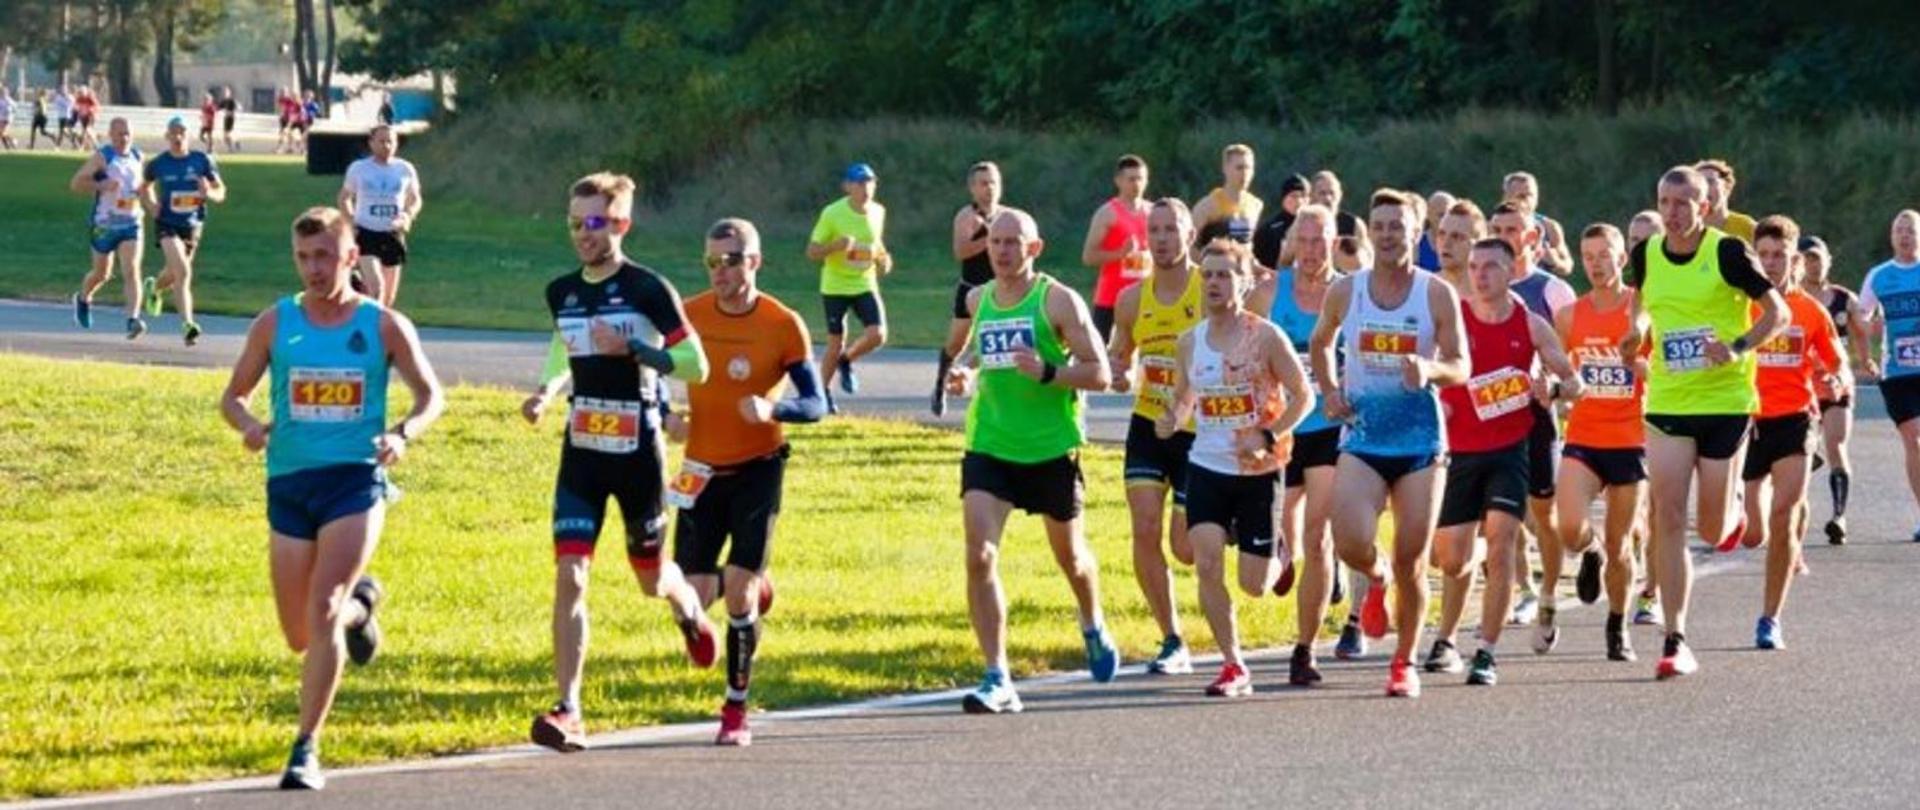 Zdjęcie przedstawia ciąg biegaczy podczas letnich zawodów sportowych. 